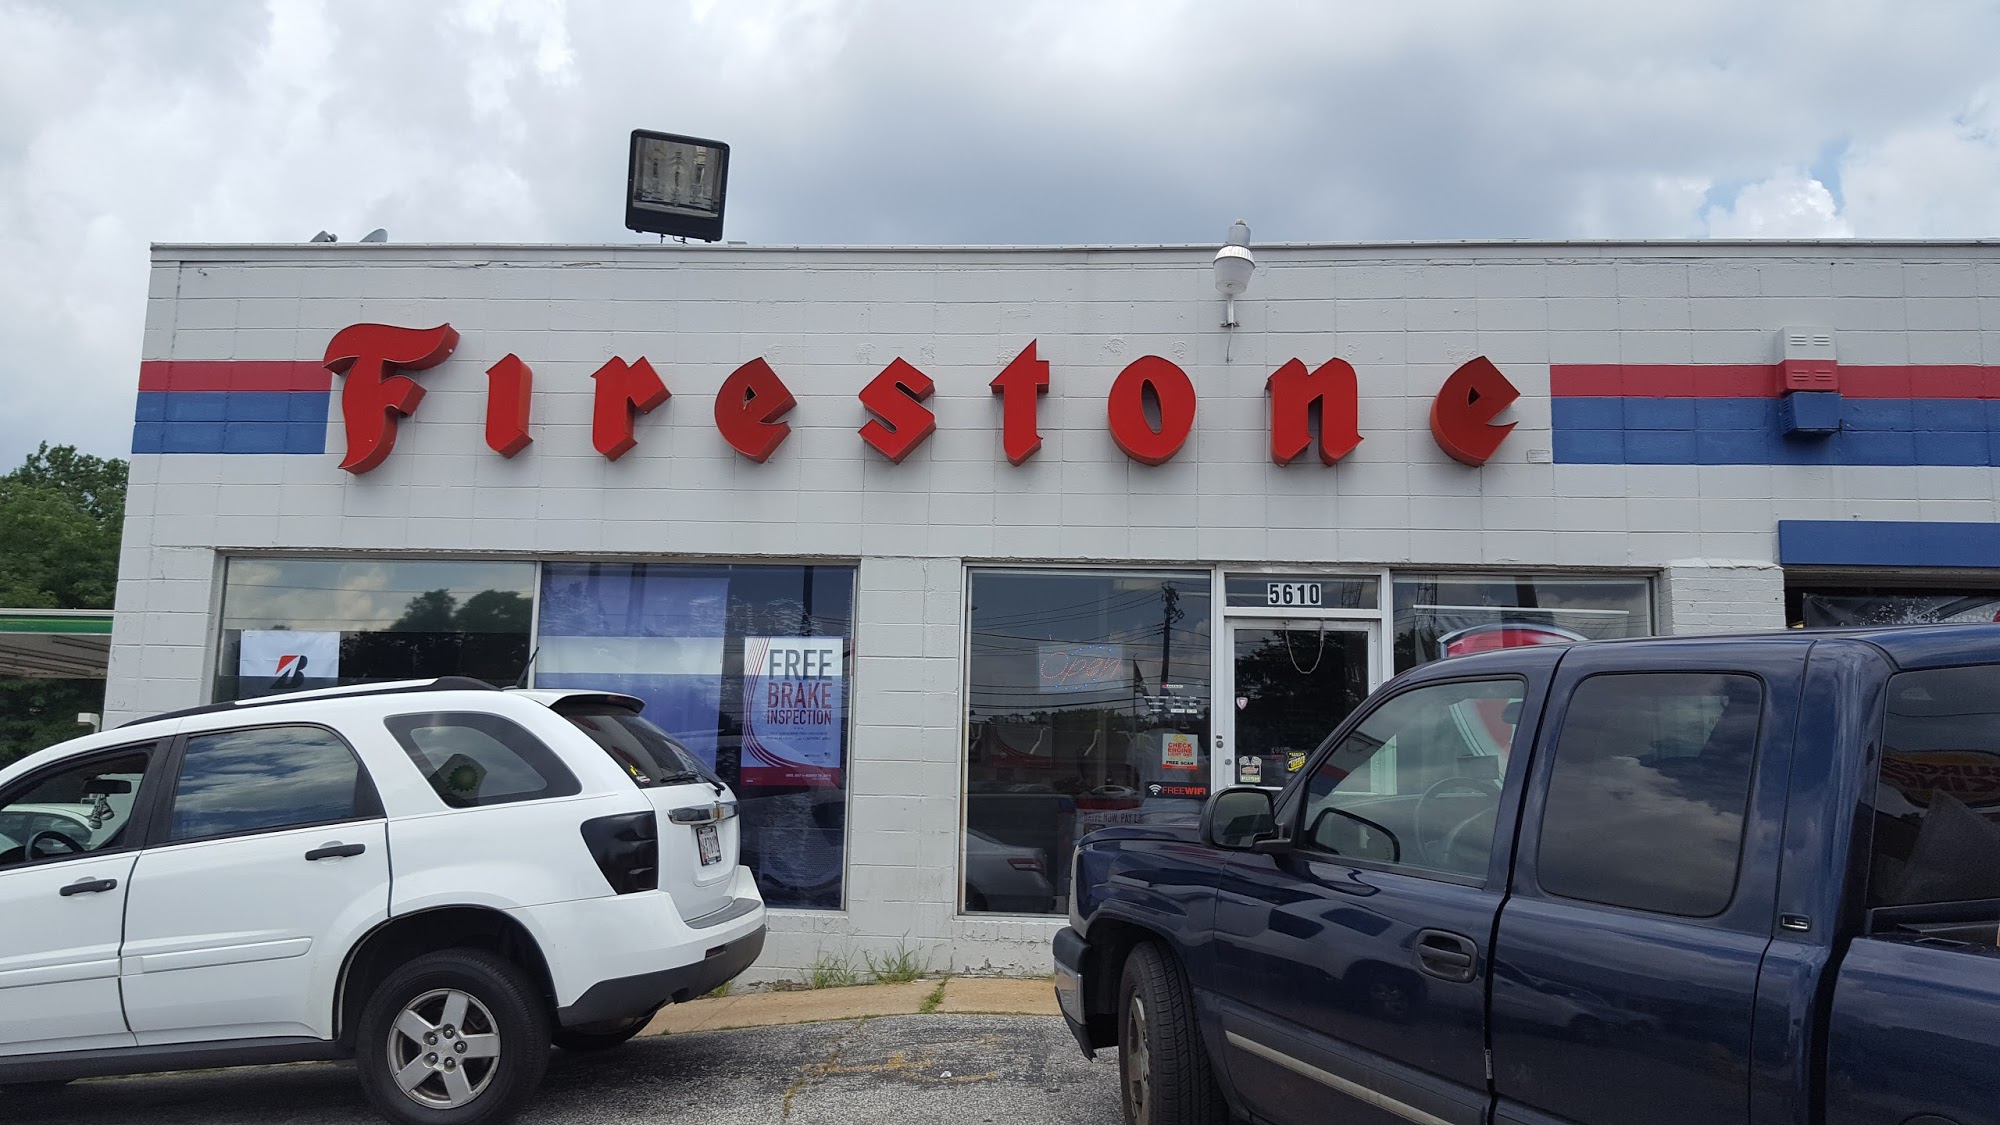 Firestone Complete Auto Care